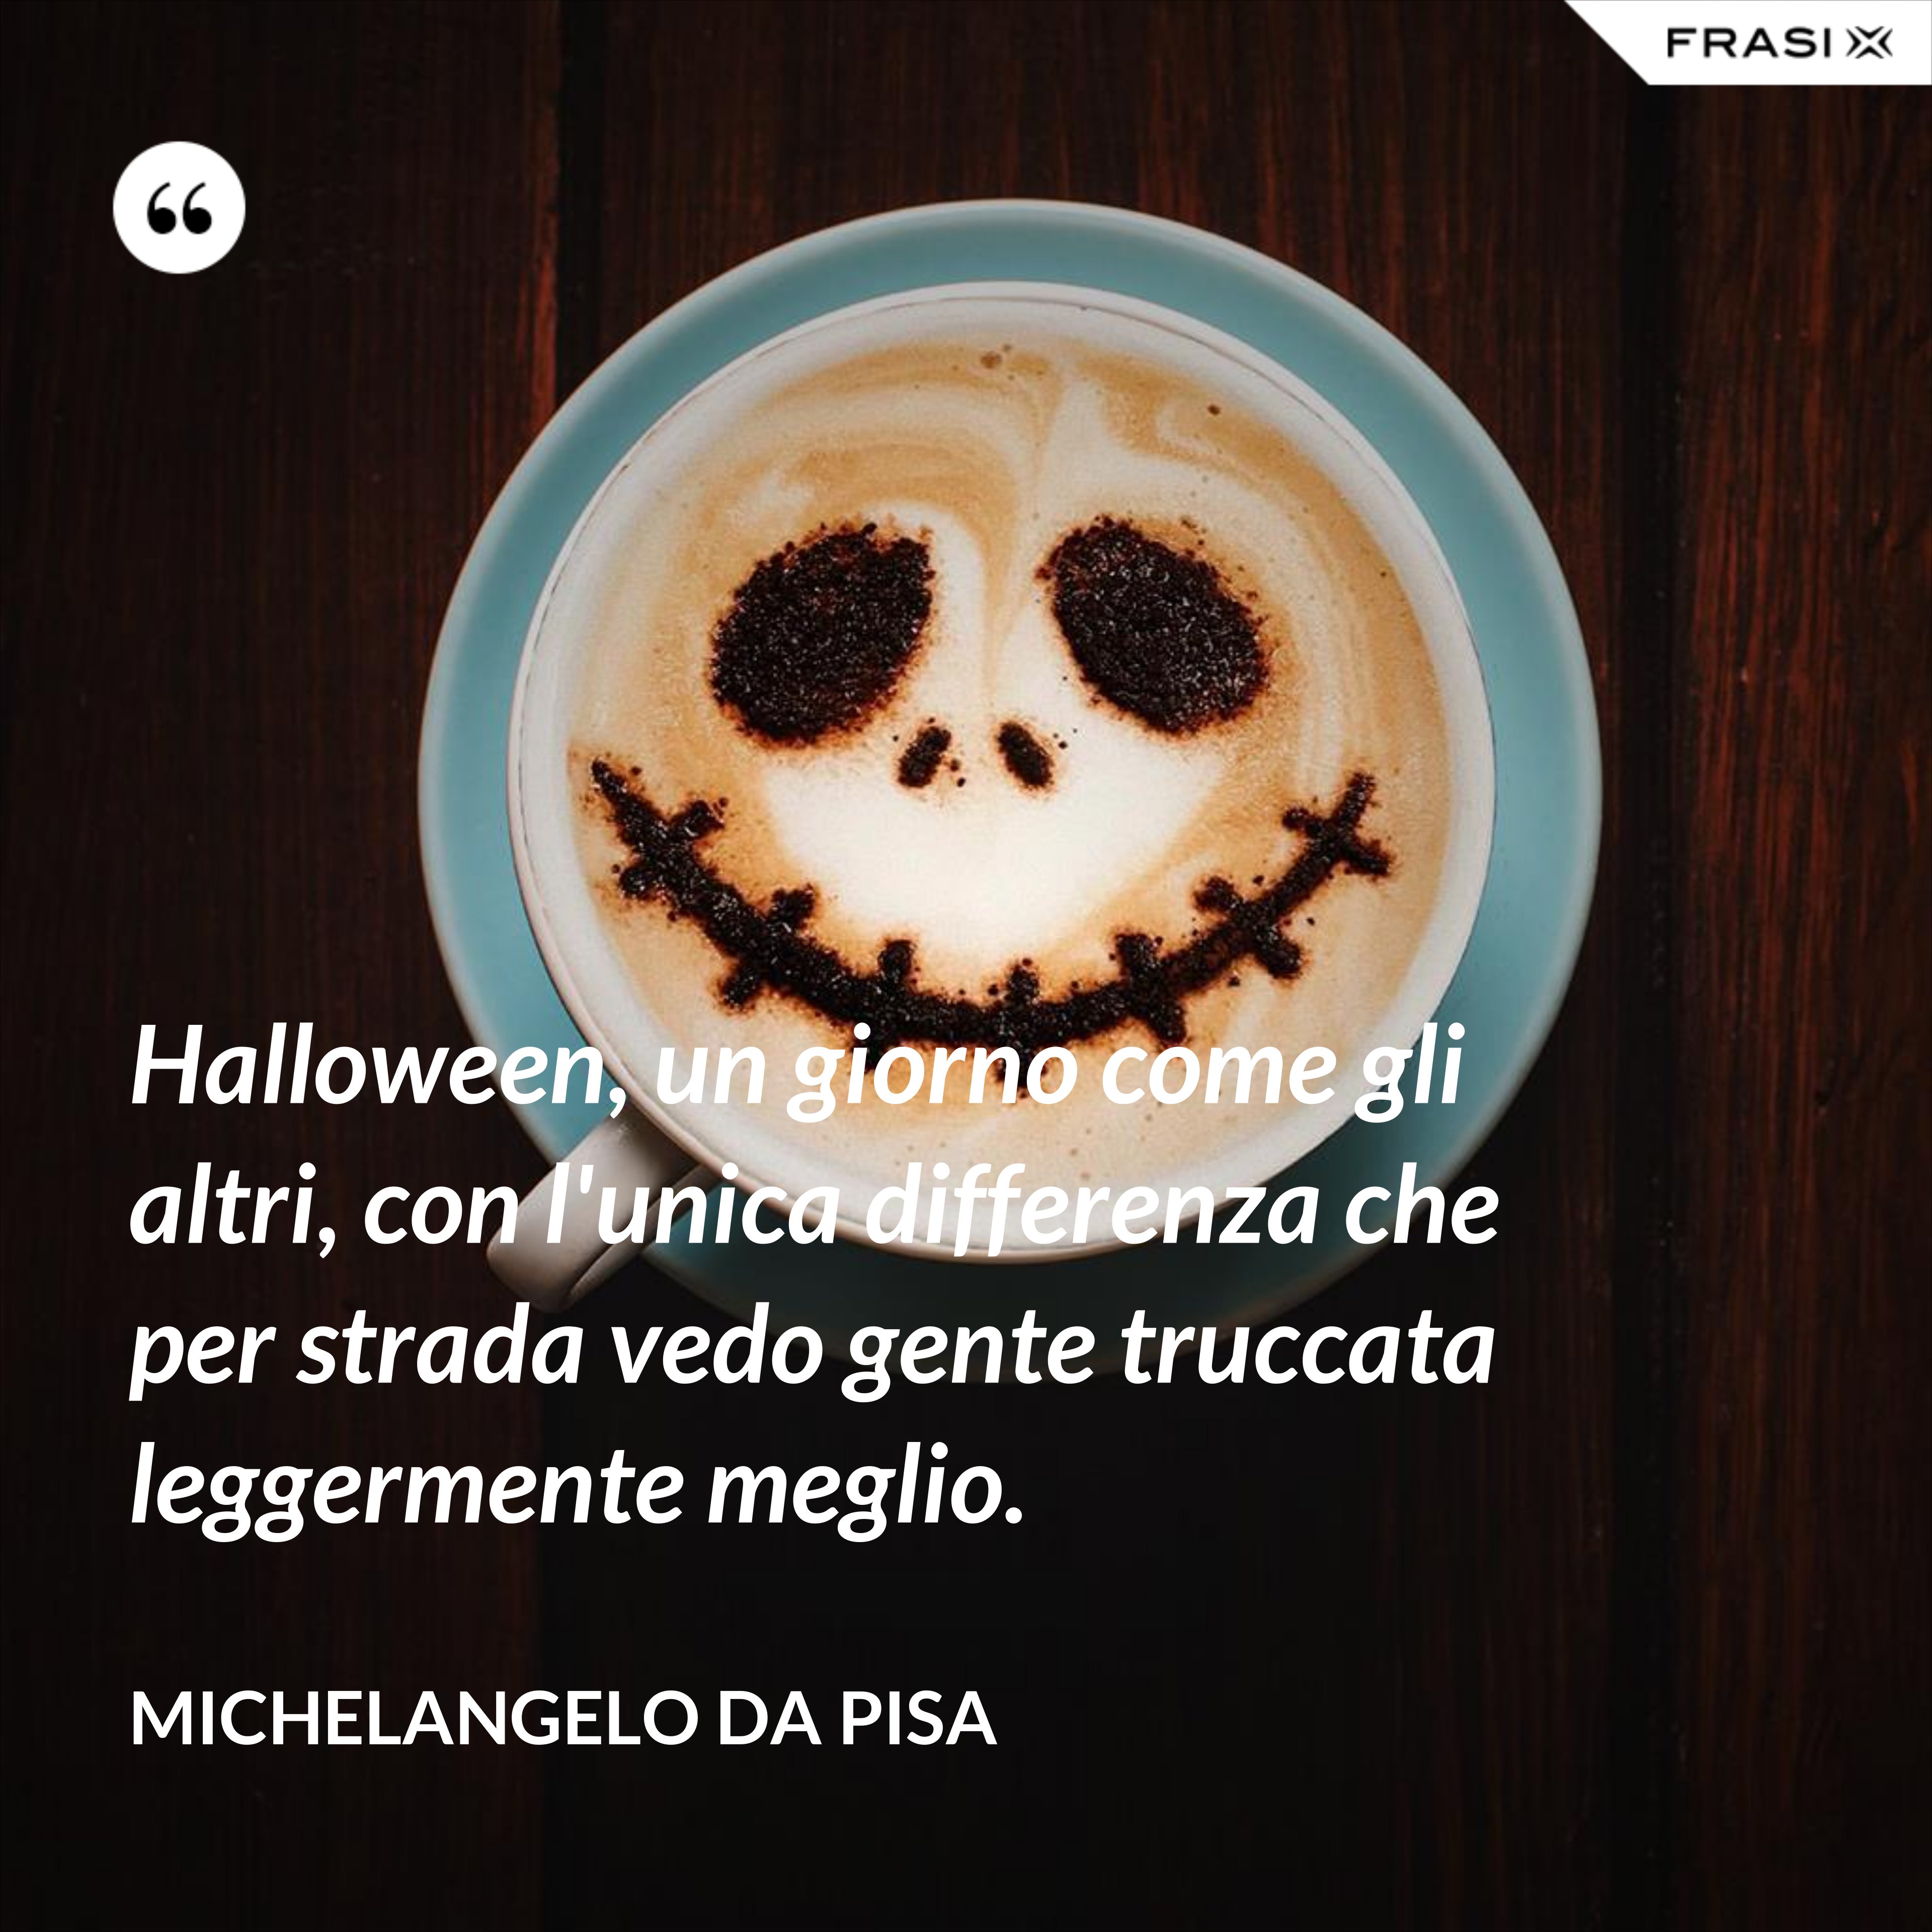 Halloween, un giorno come gli altri, con l'unica differenza che per strada vedo gente truccata leggermente meglio. - Michelangelo Da Pisa